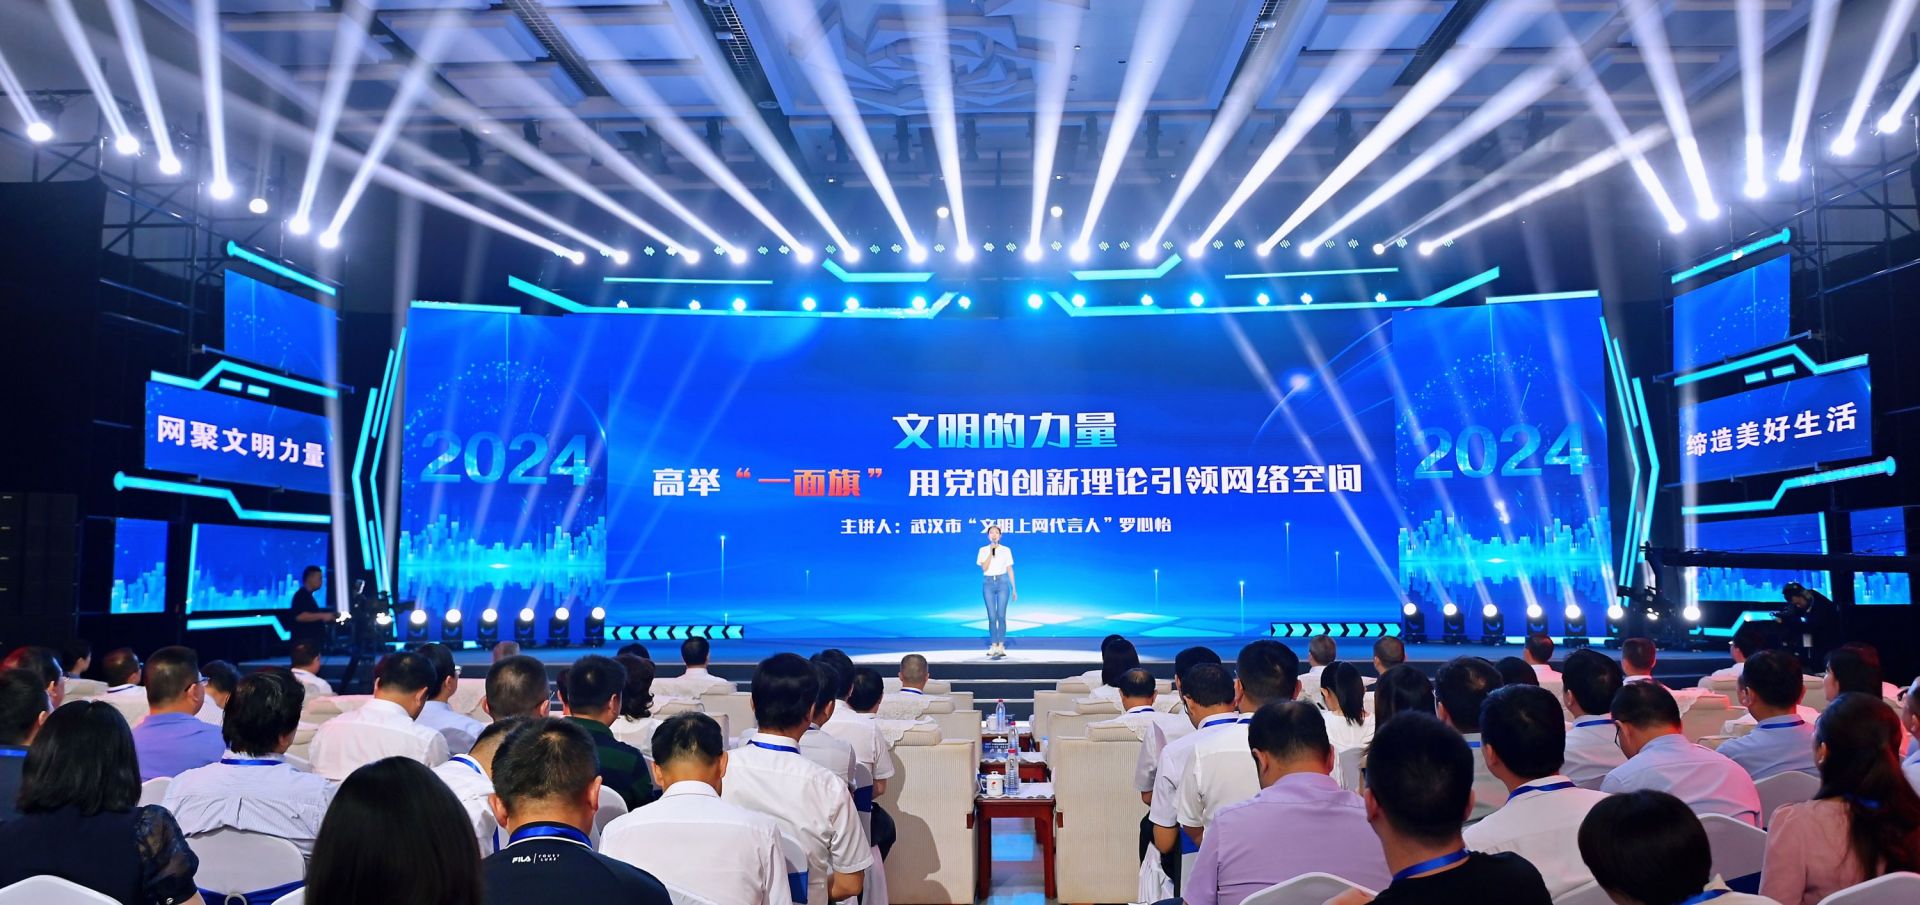 2024年湖北省网络文明大会在武汉召开